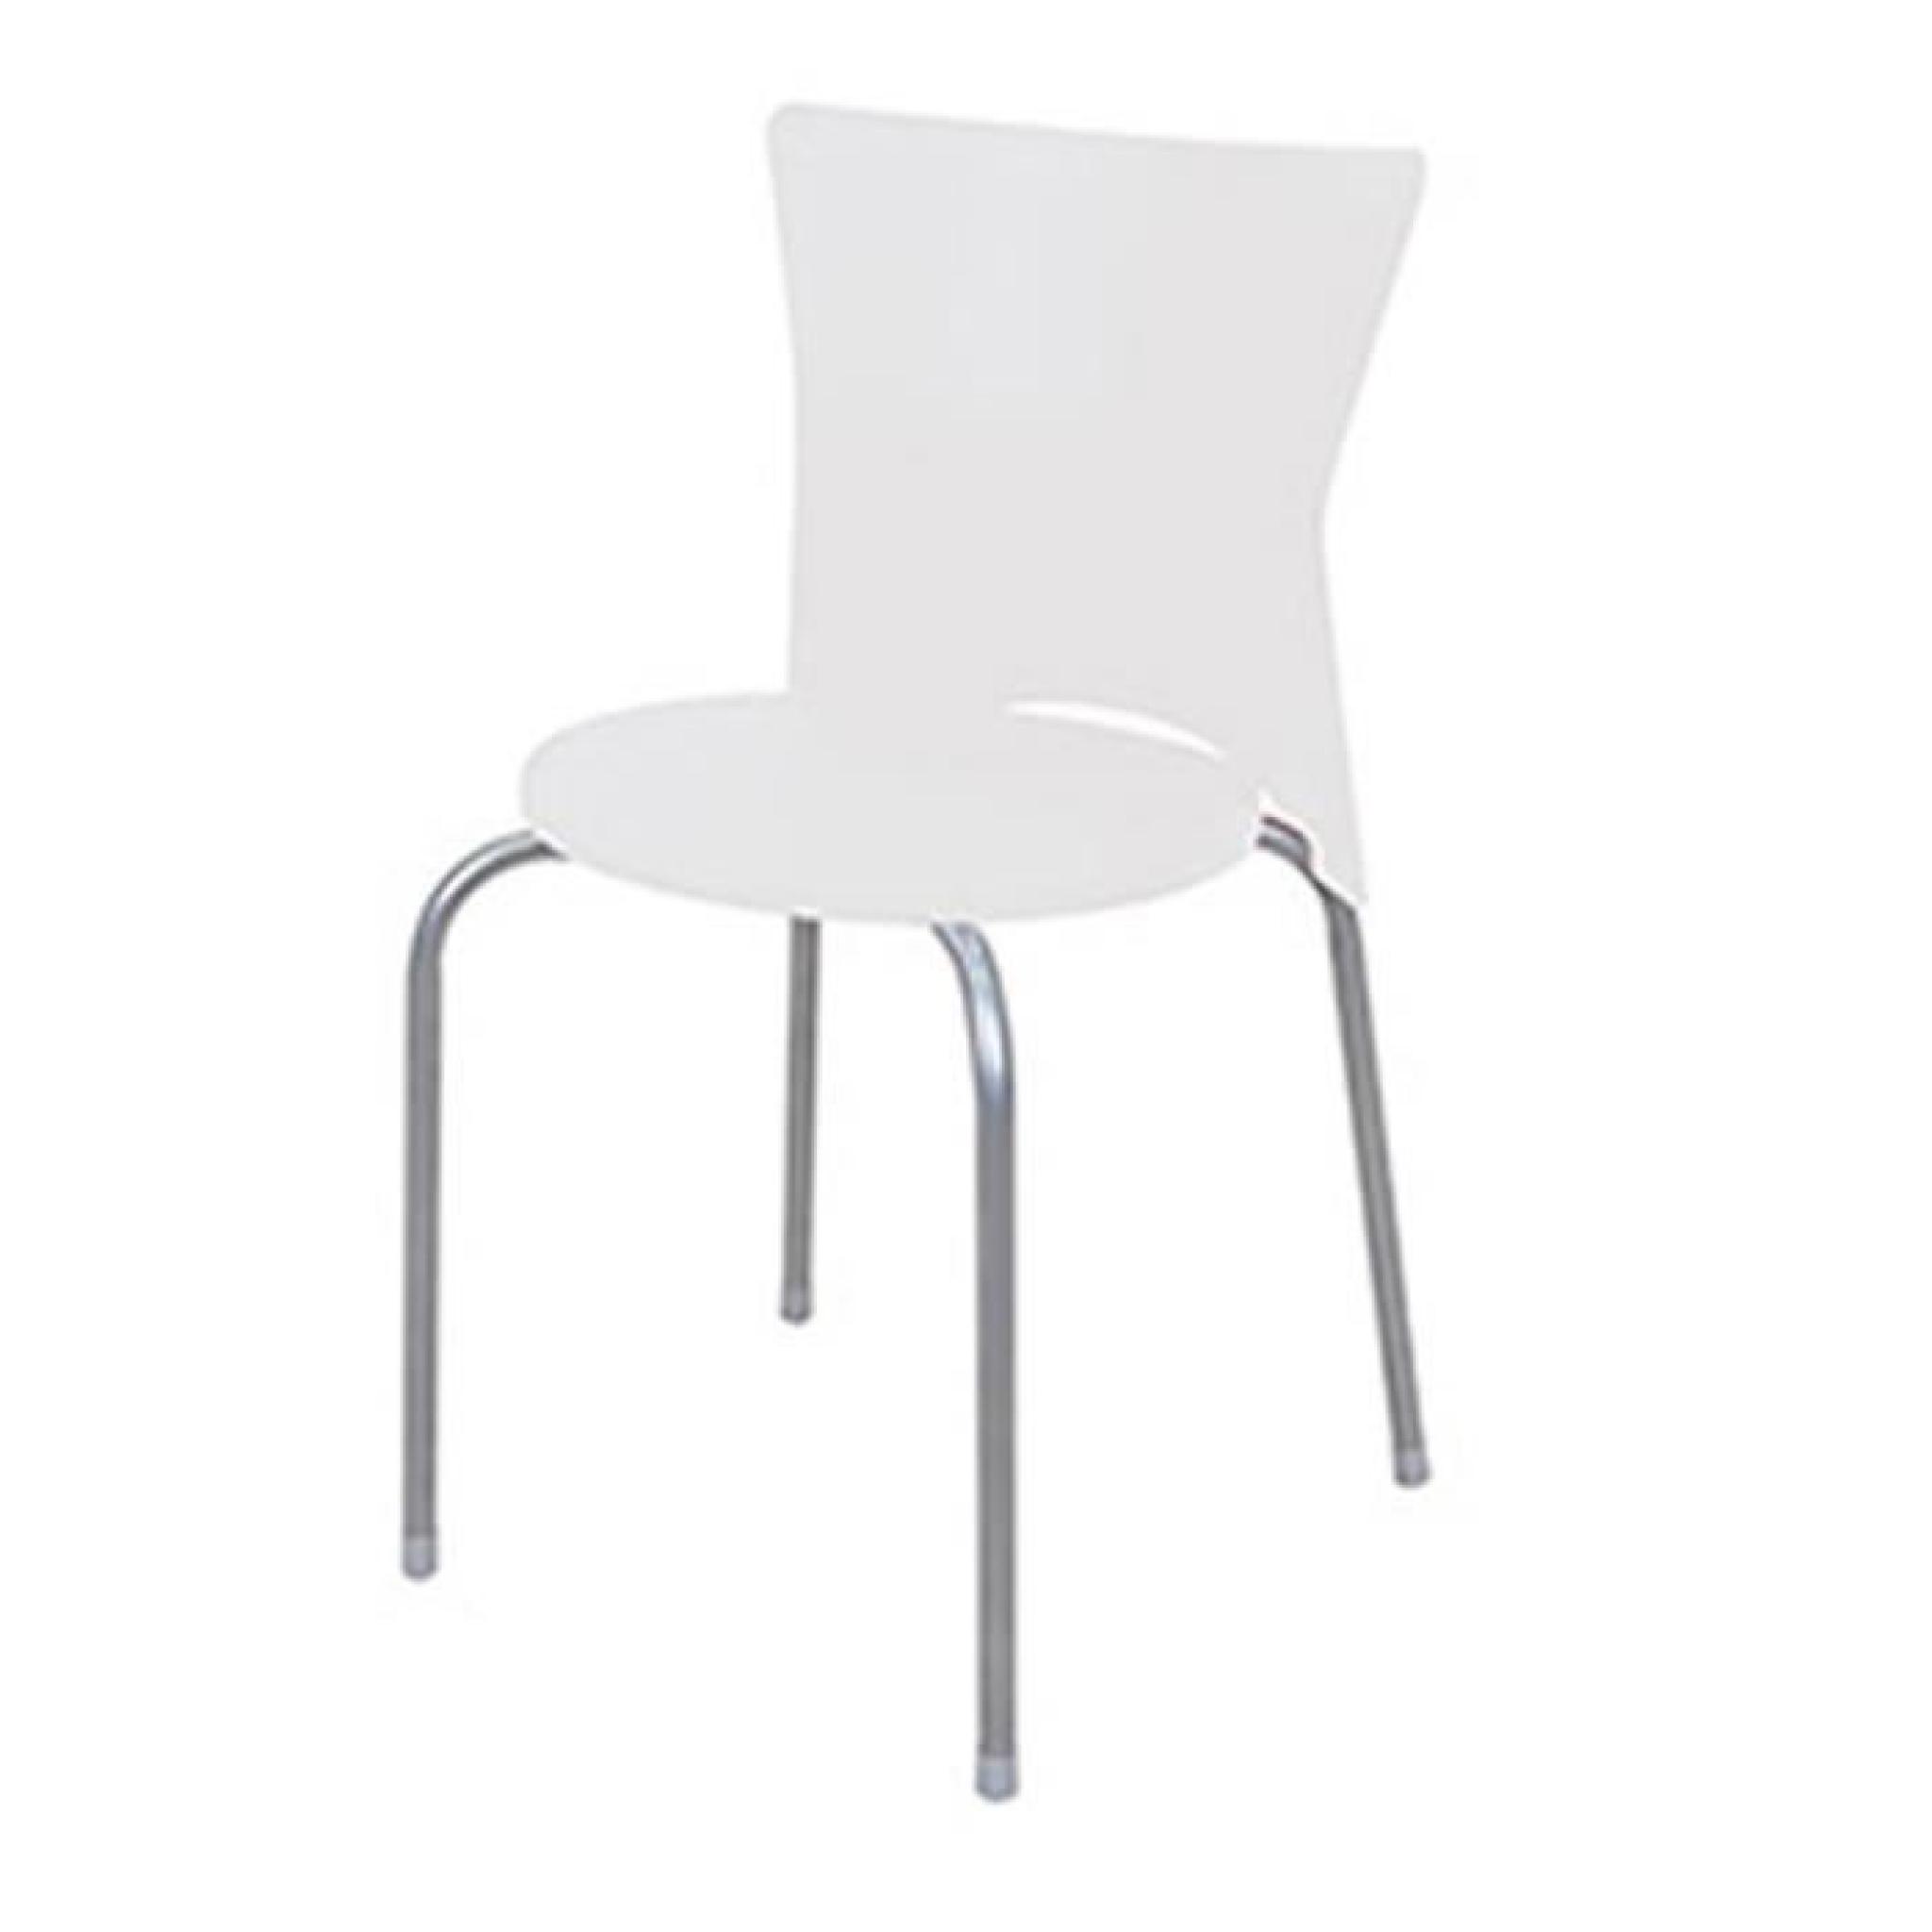 Chaise empilable STUDIO Blanc, L45 x P42 x H76 cm